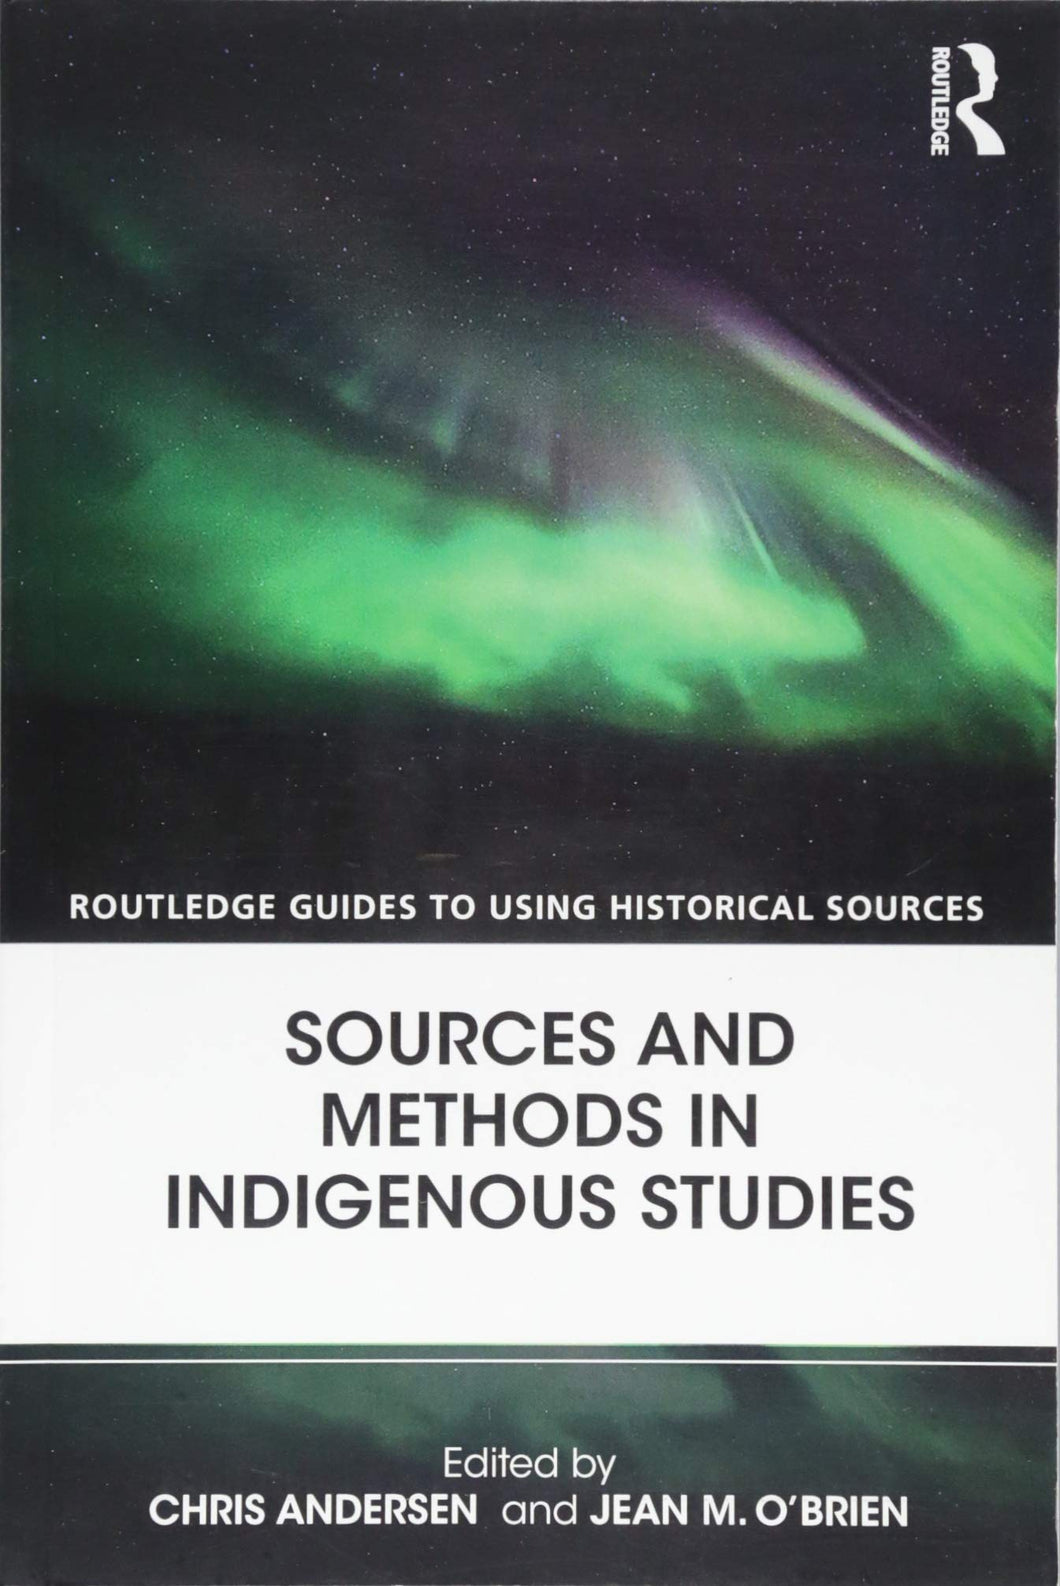 Sources and Methods in Indigenous Studies [Edited by Chris Andersen & Jean M. O'Brien]